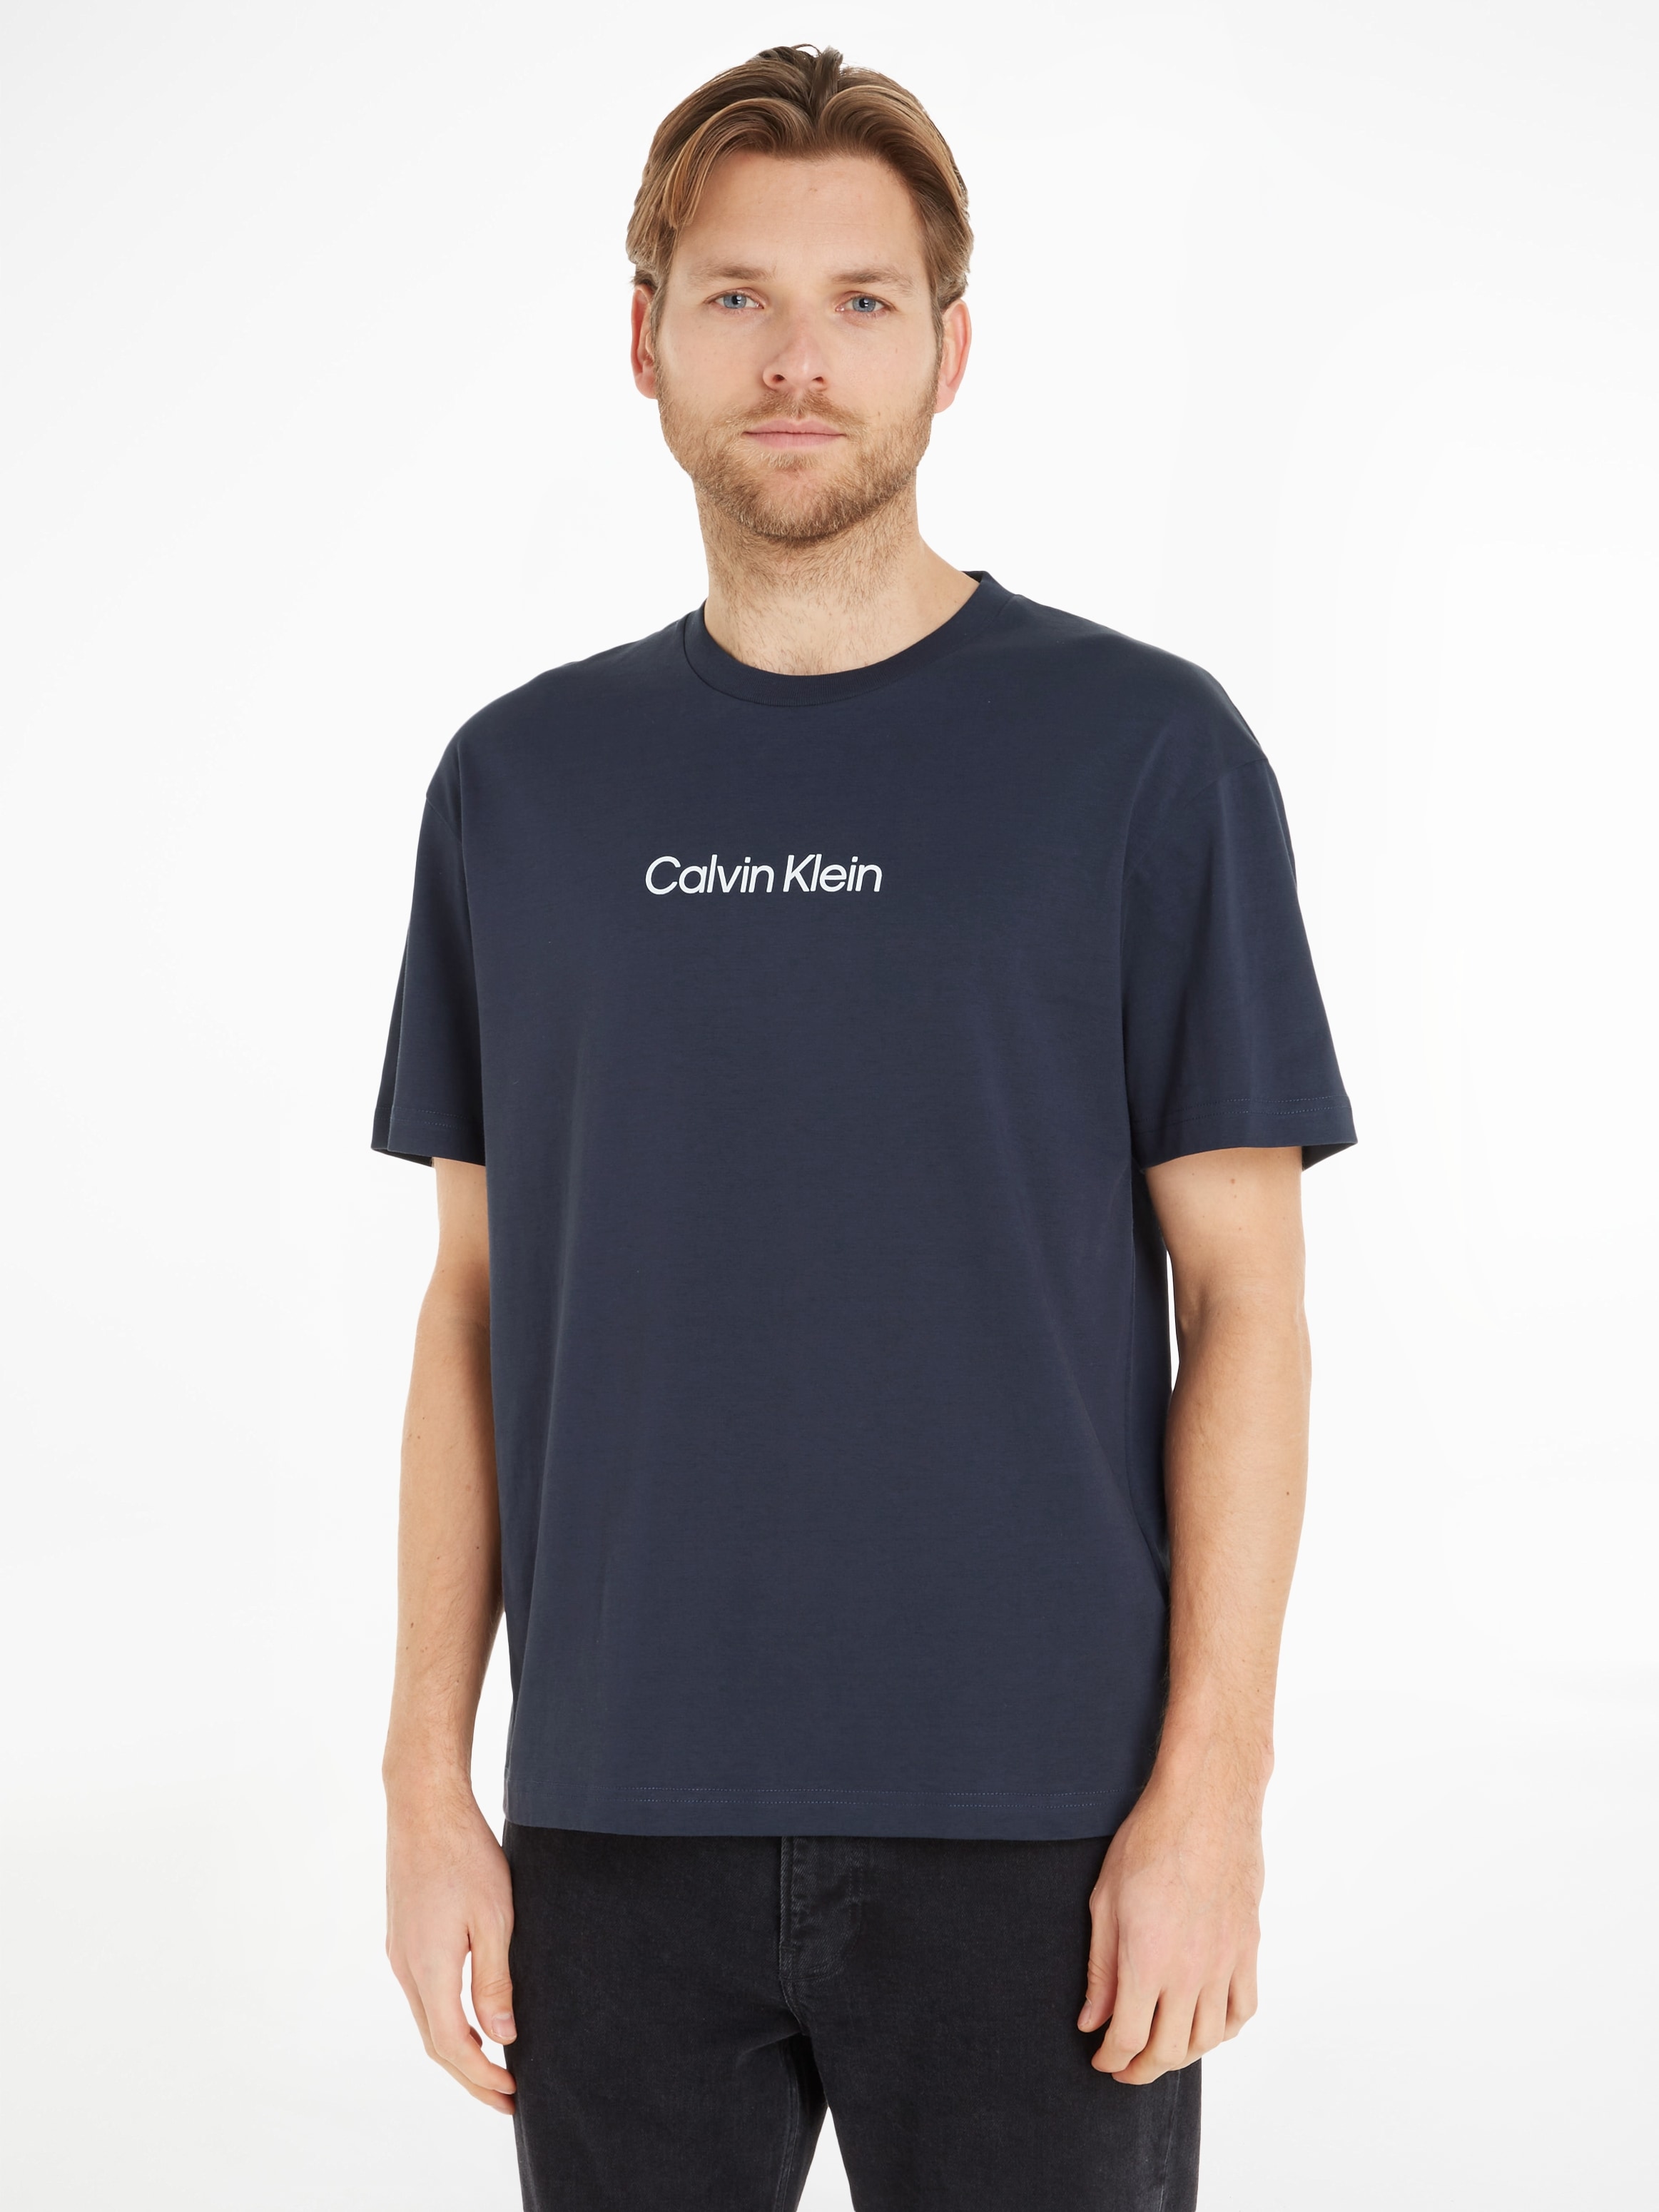 Supergünstiger Ausverkauf läuft! Calvin Klein T-Shirt COMFORT T-SHIRT«, mit online LOGO »HERO Markenlabel aufgedrucktem bei